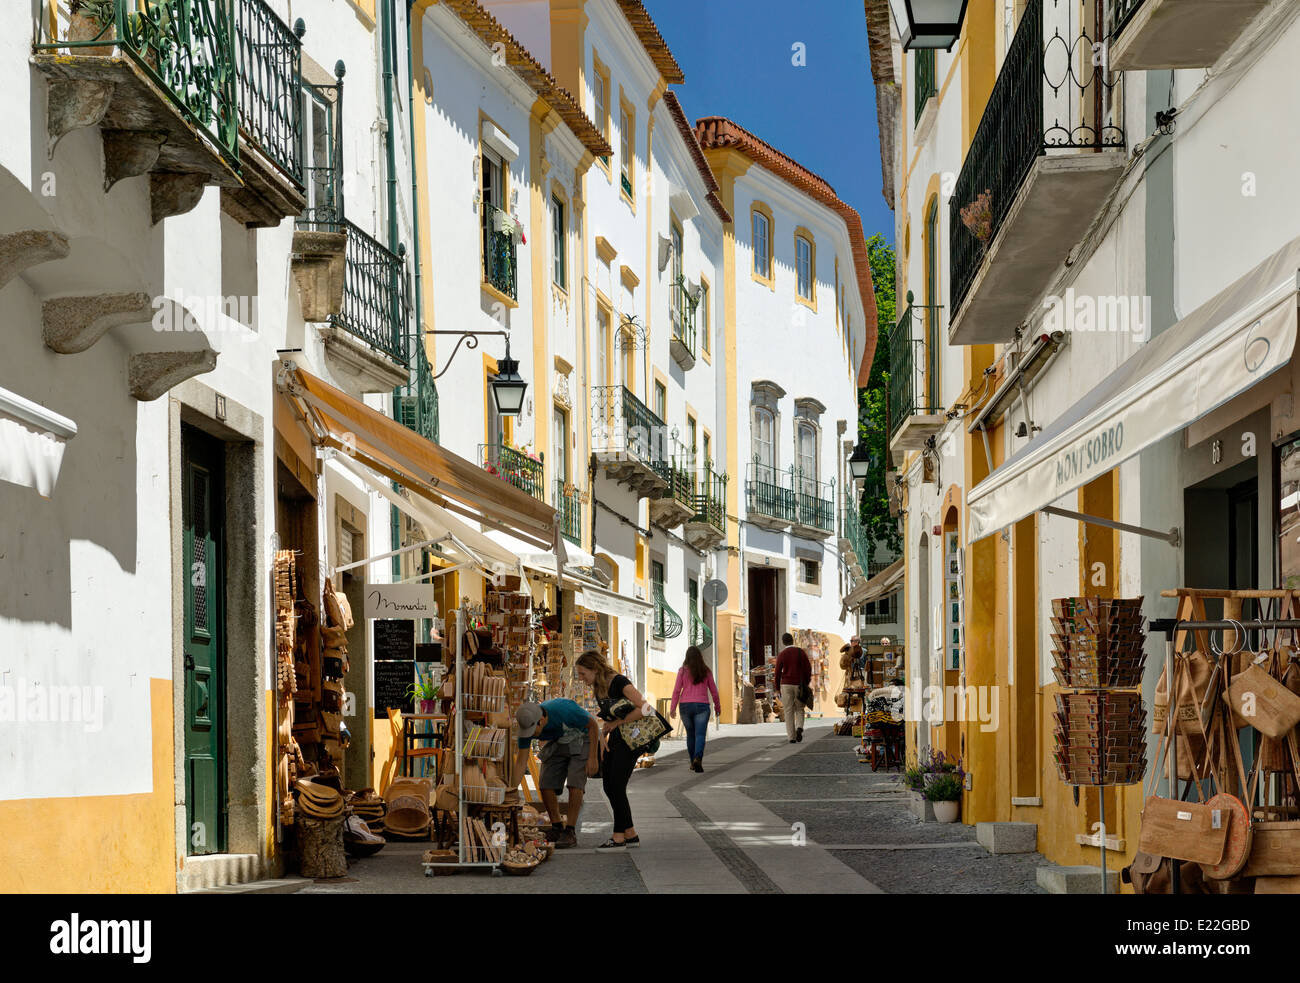 Le Portugal, l'Alentejo, Evora, une rue étroite bordée de boutiques d'artisanat Banque D'Images